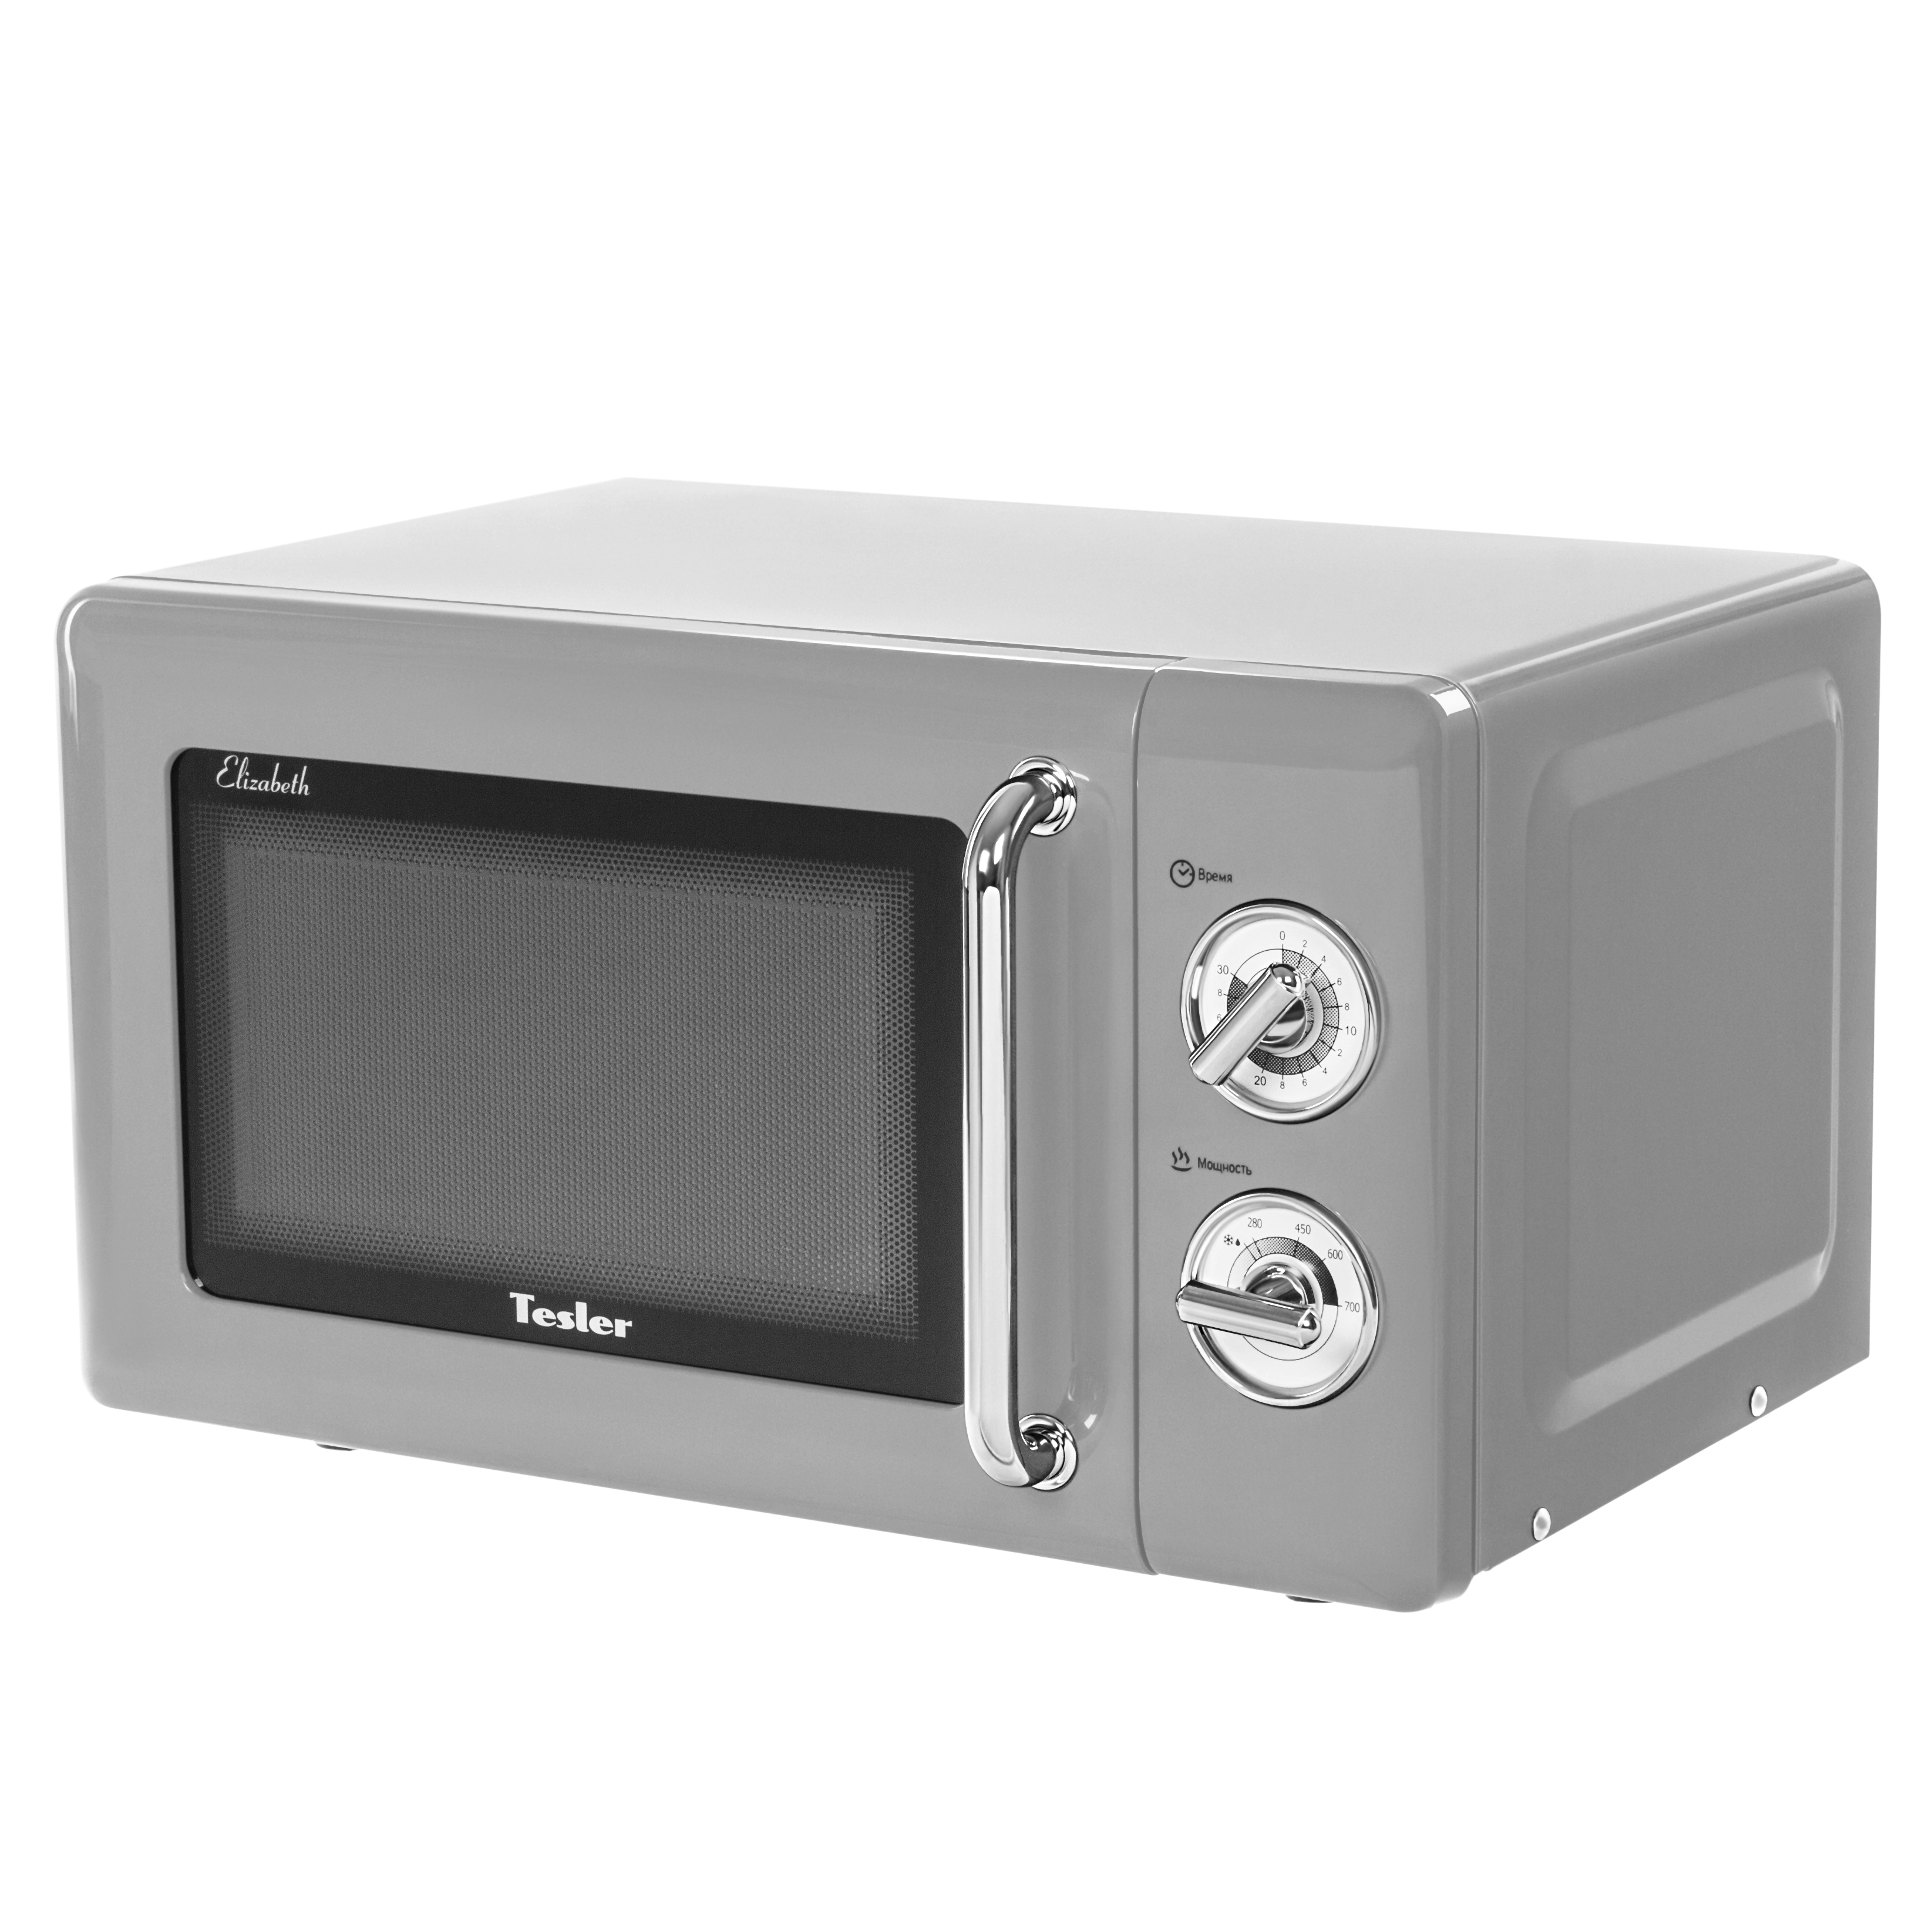 Микроволновая печь соло TESLER MM-2045 серый микроволновая печь соло pioneer mw204m серебристый серый